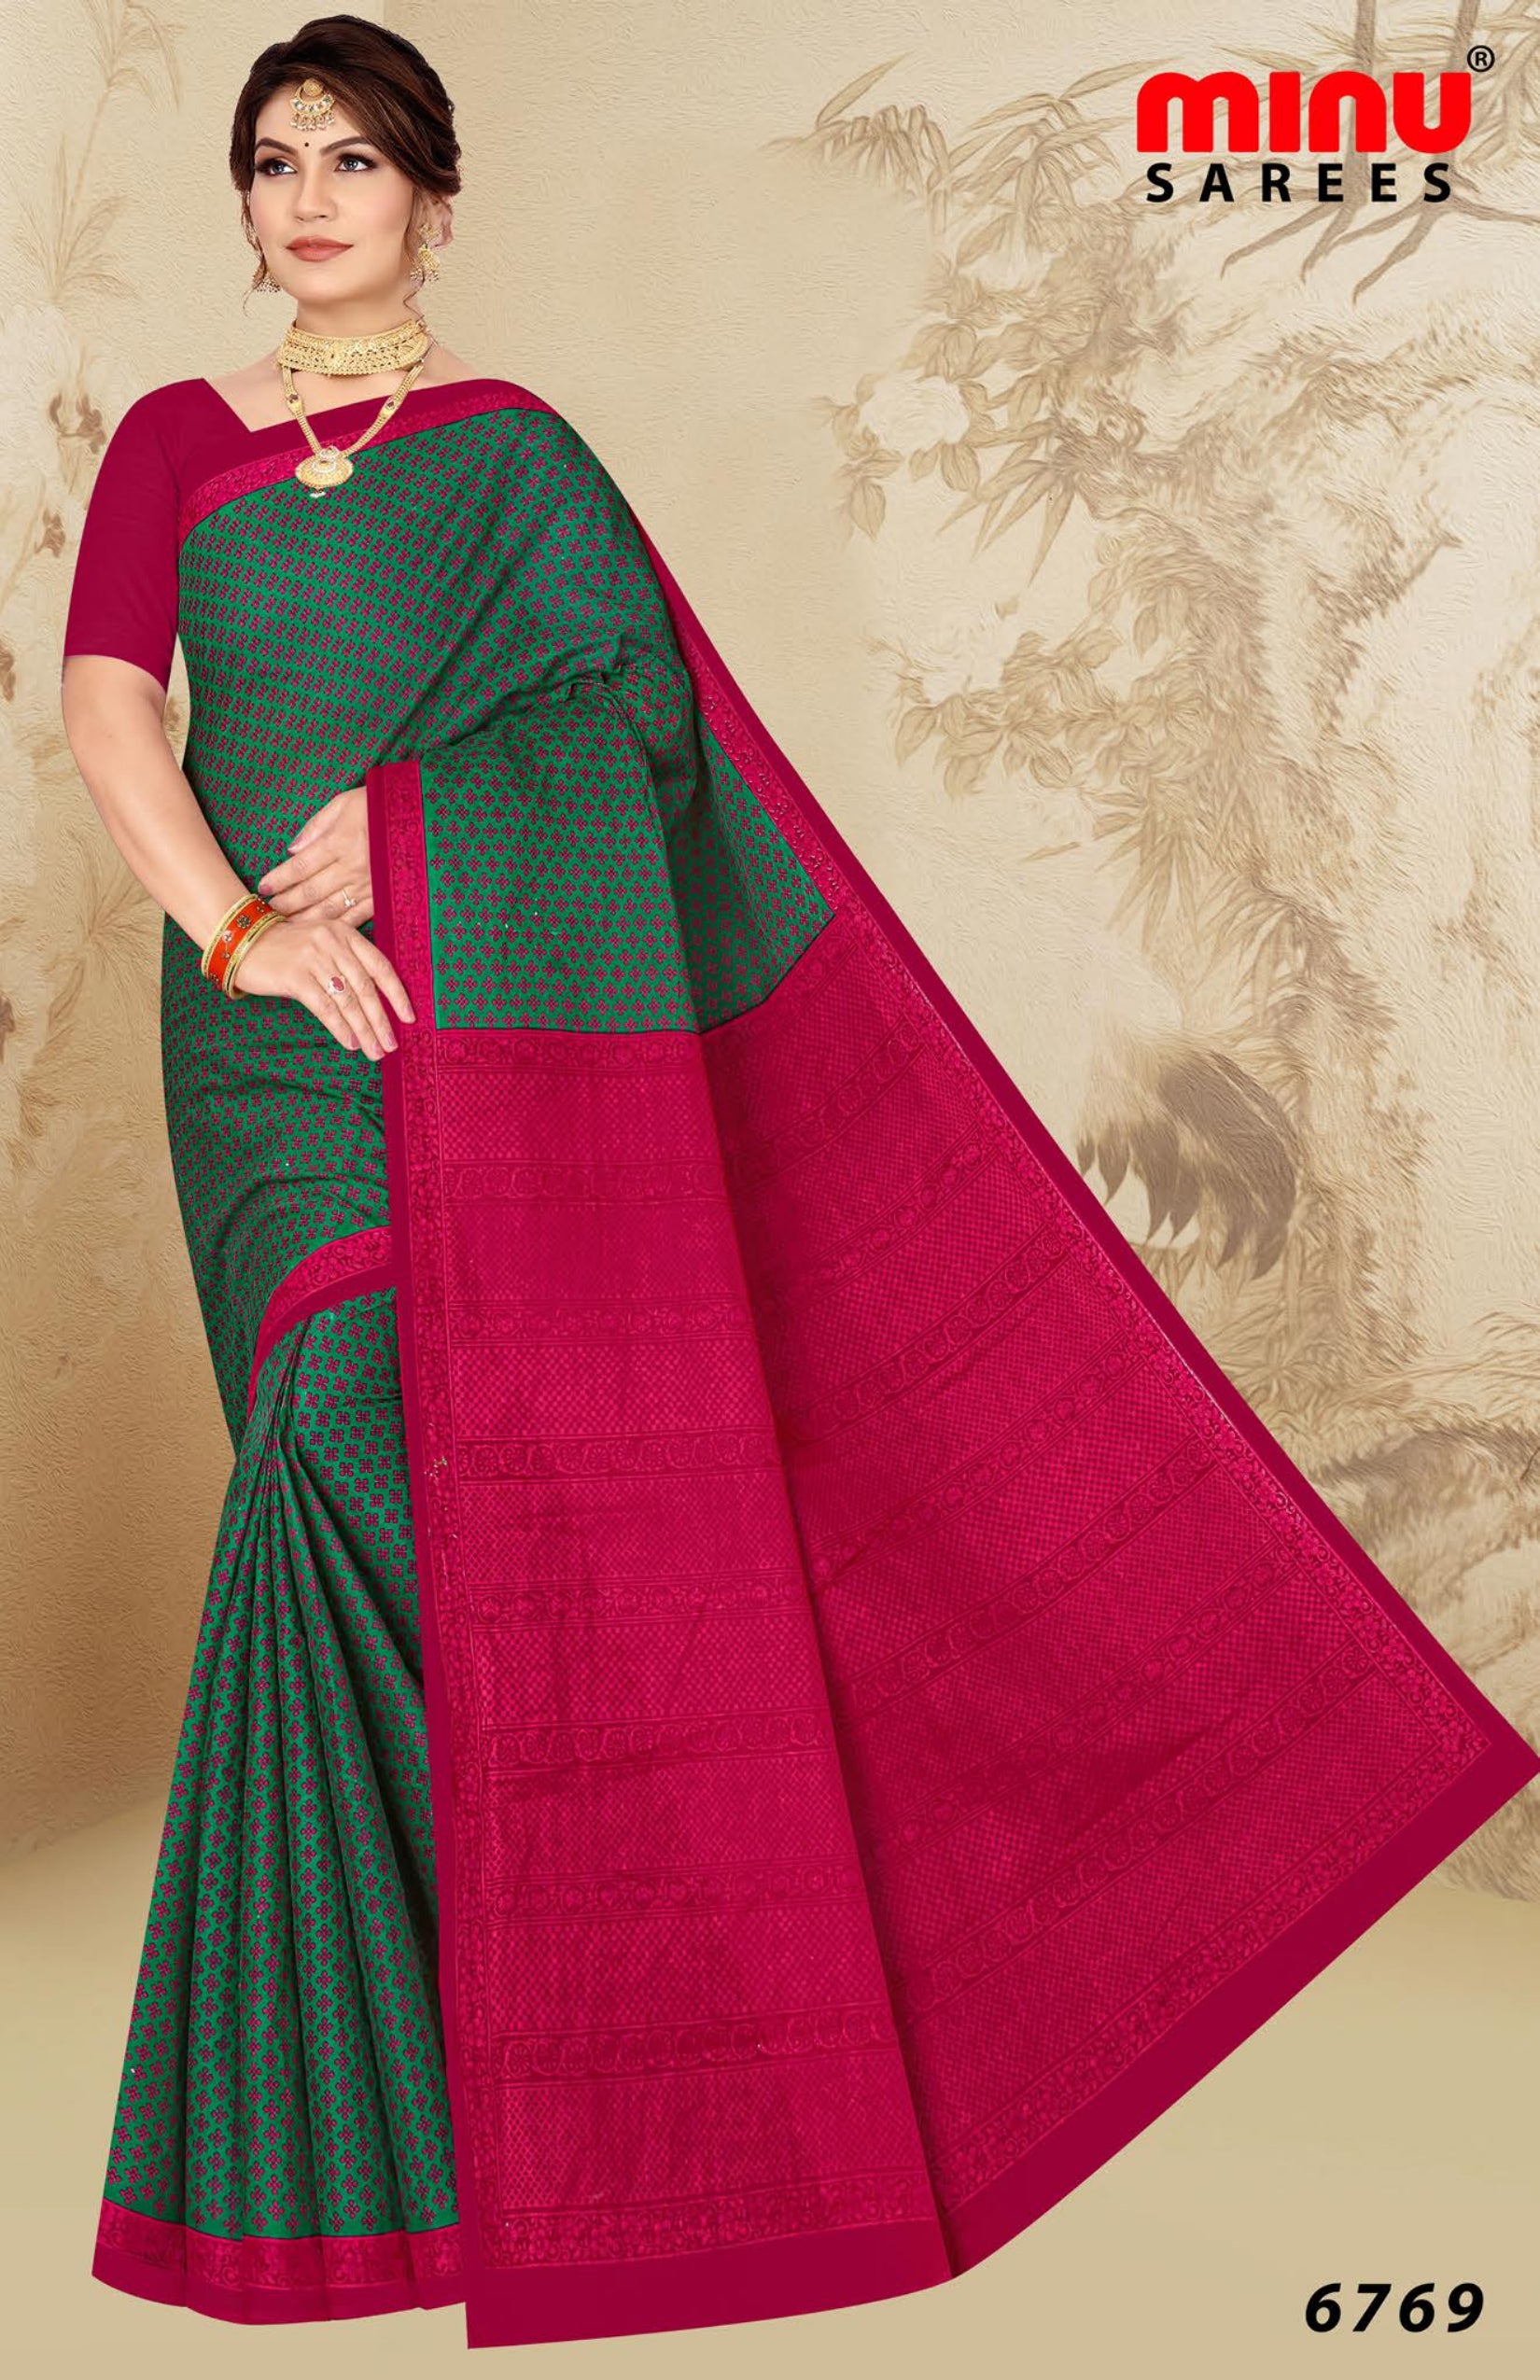 women wearing red cotton printed saree 